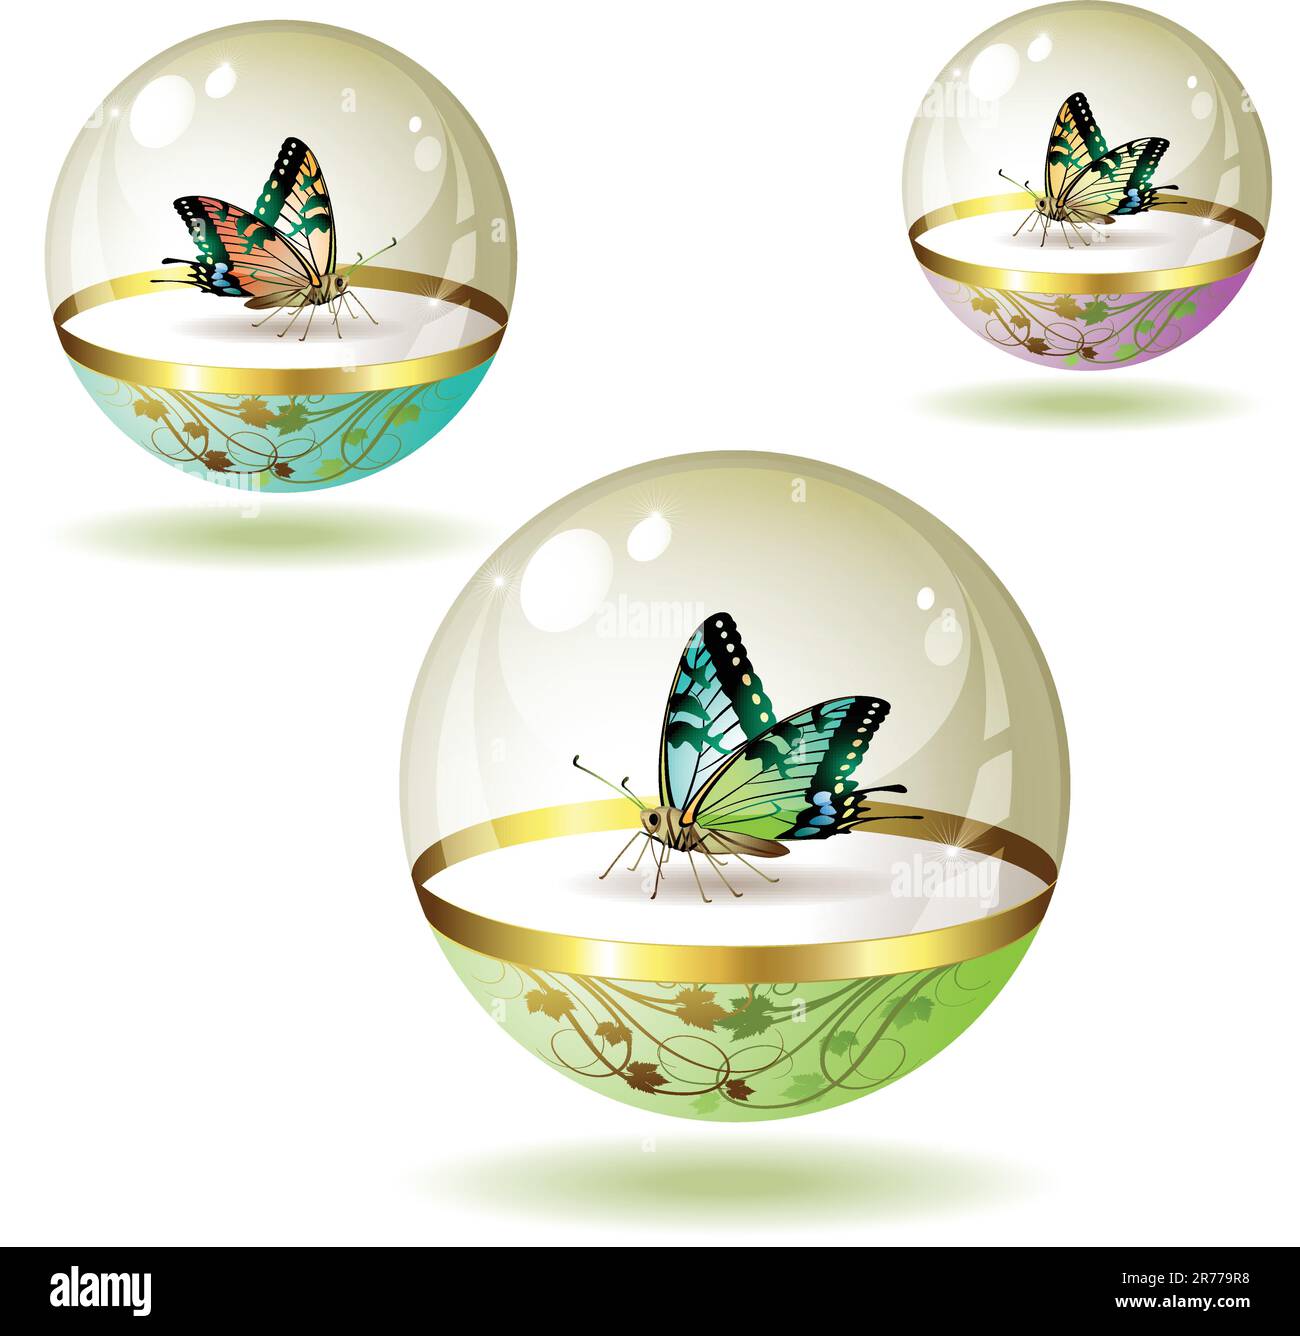 Collezione di farfalle isolata in globo di vetro su sfondo bianco, illustrazione vettoriale Illustrazione Vettoriale